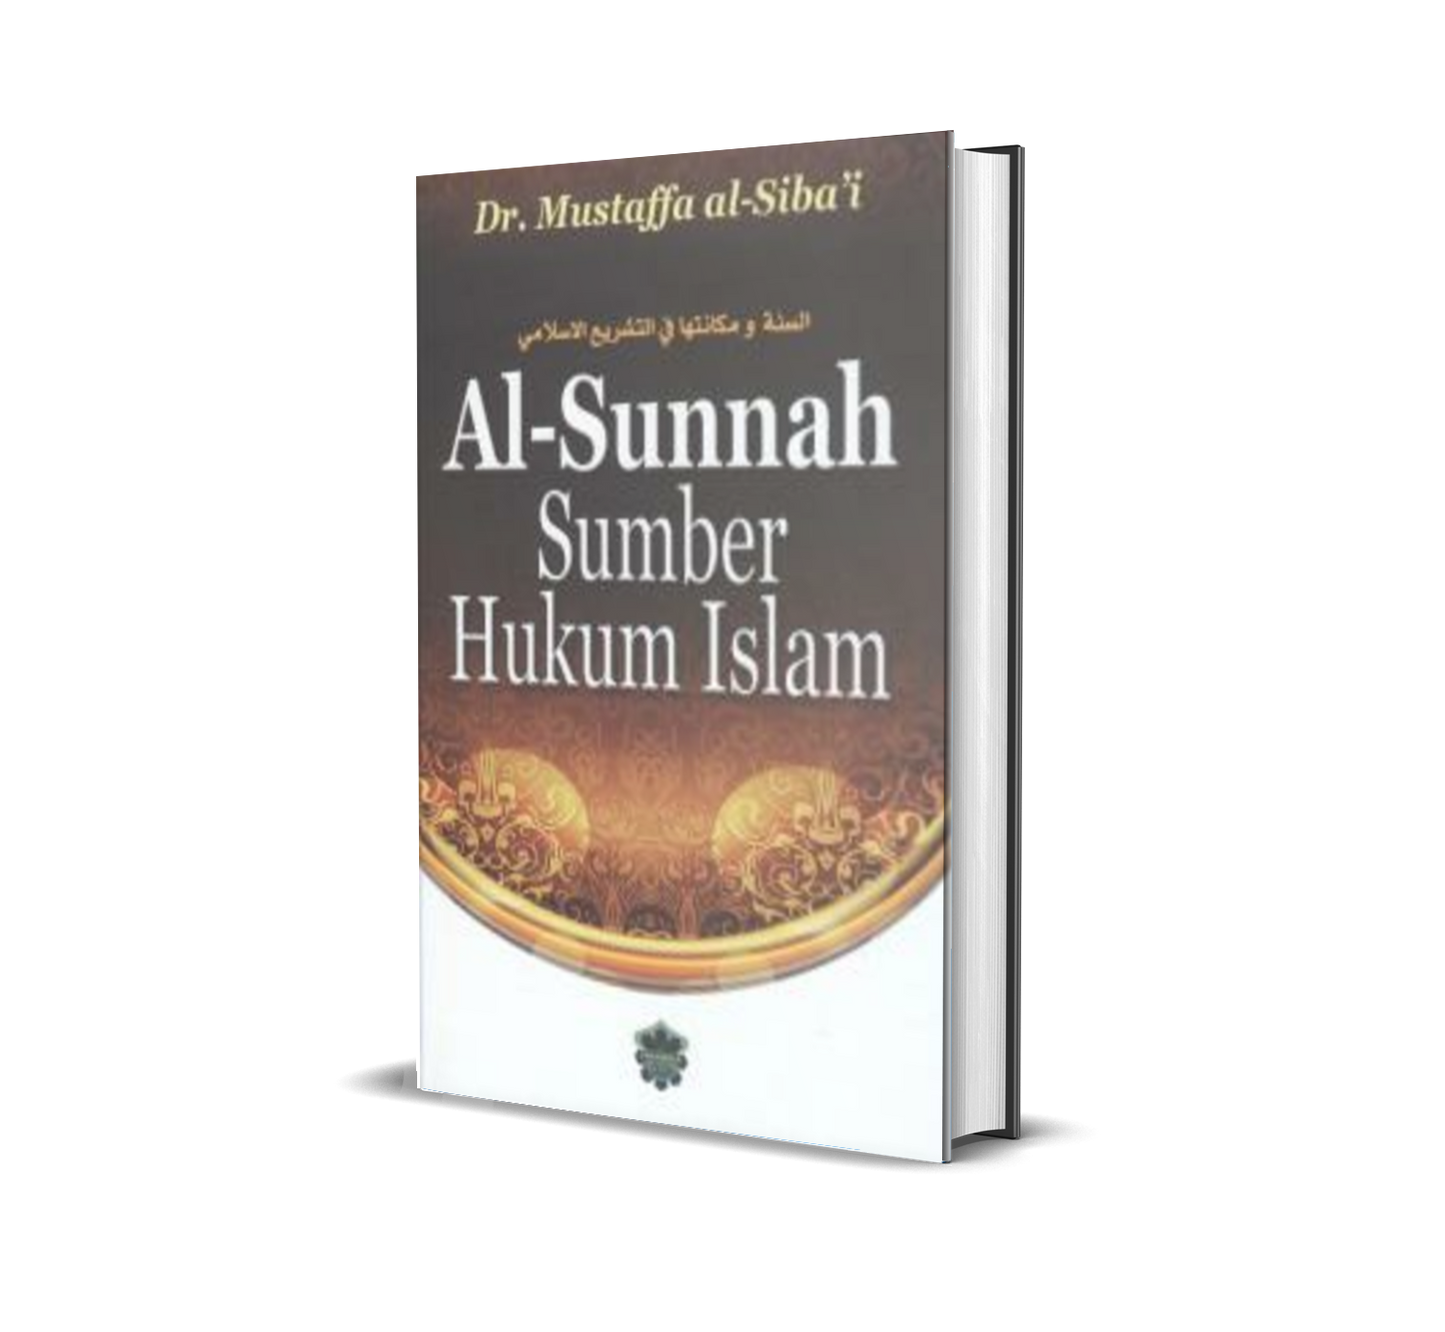 Al-Sunnah Sumber Hukum Islam